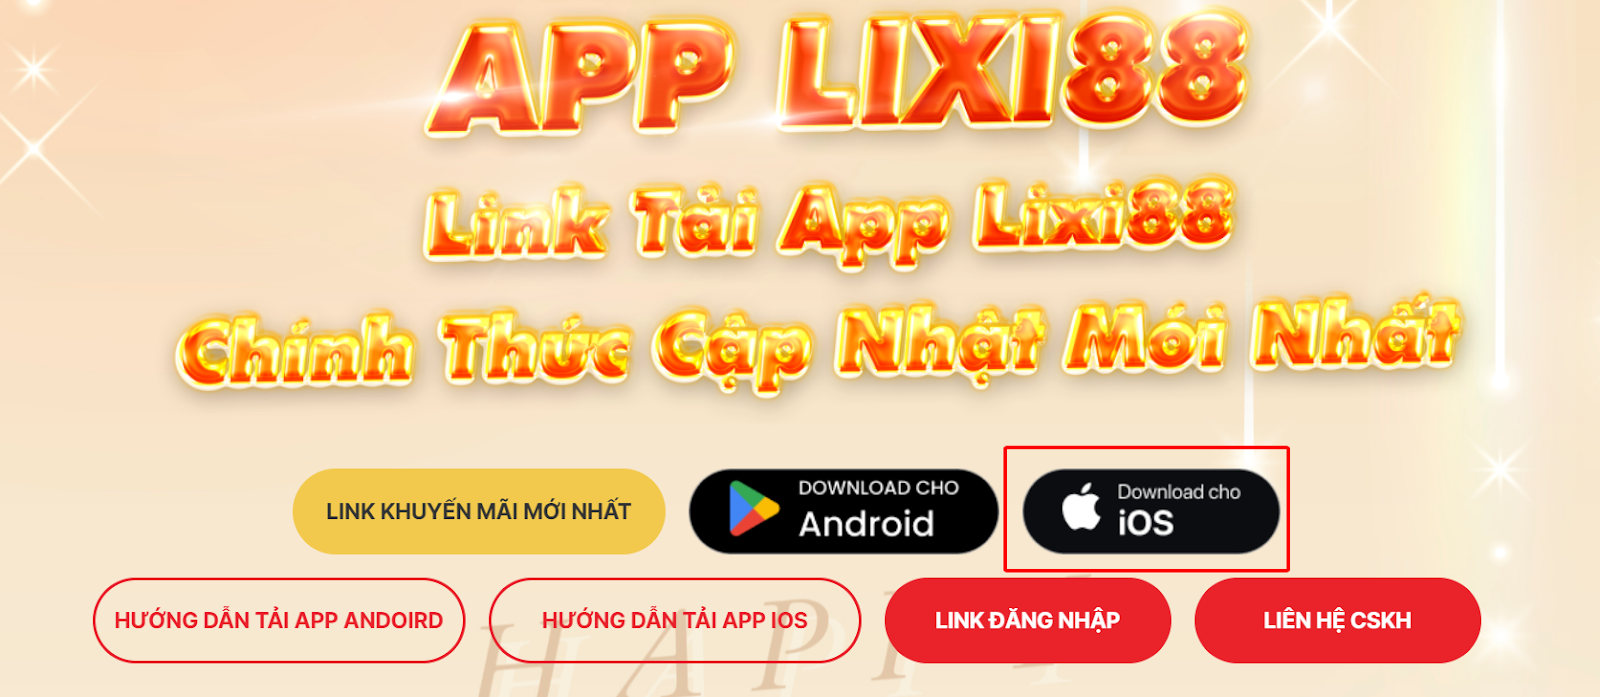 TOP các lưu ý cần biết khi tải app Lixi88 dành cho mọi anh em